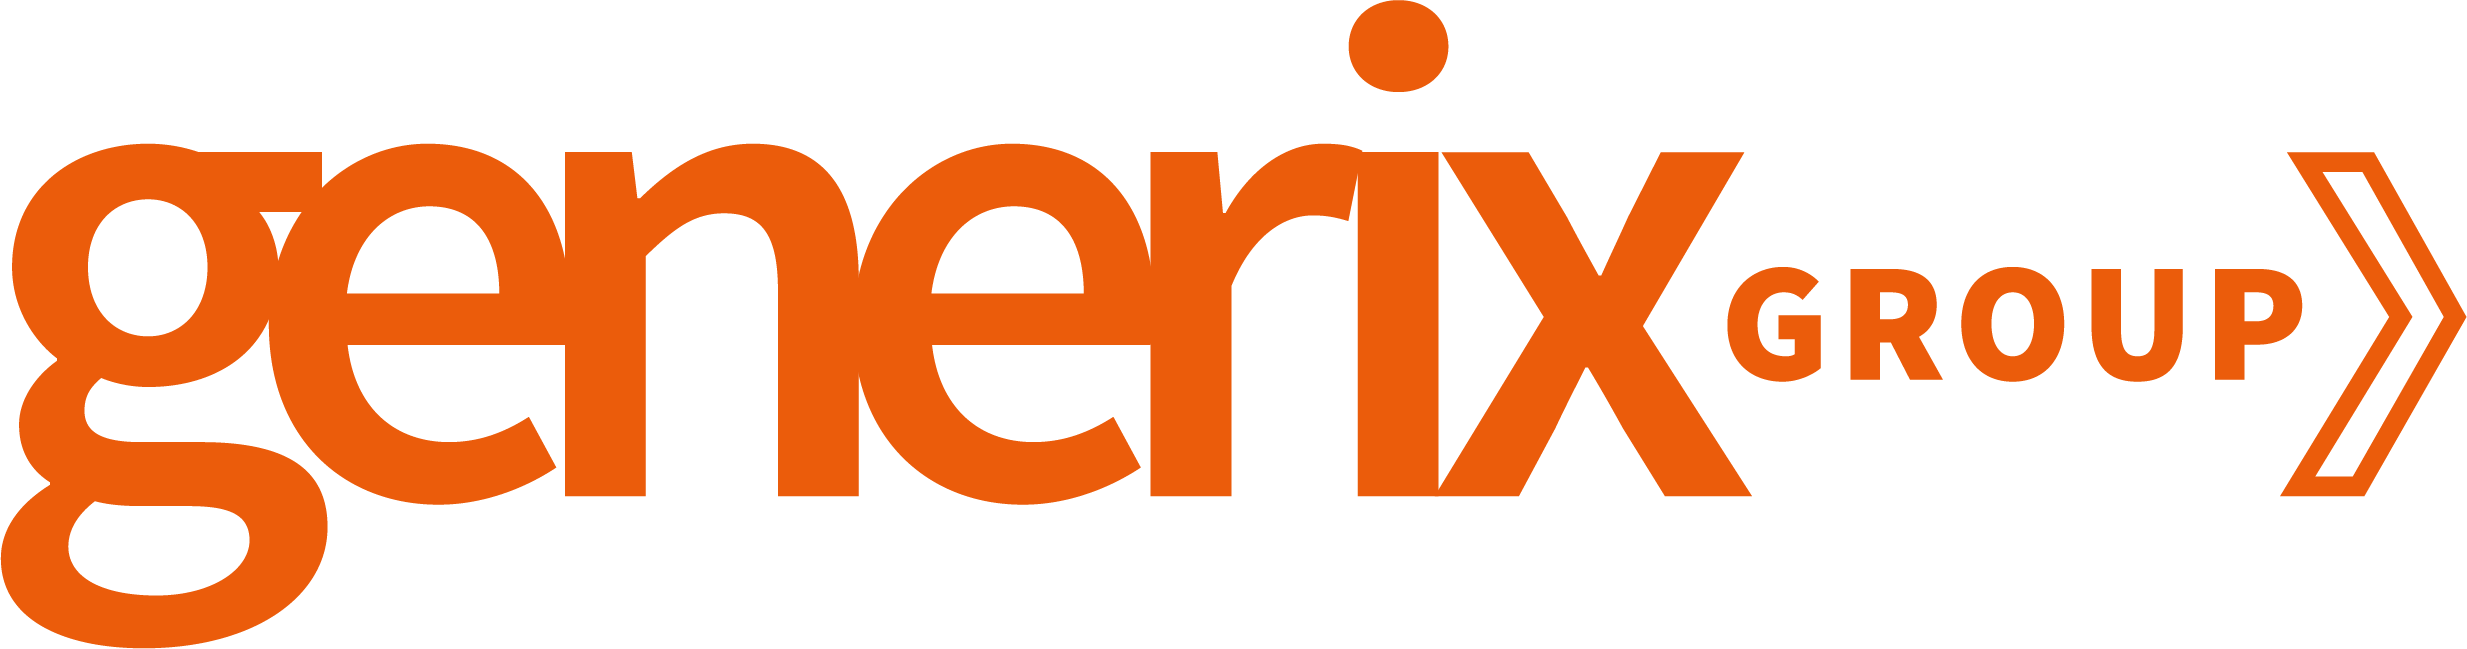 Generix Orange